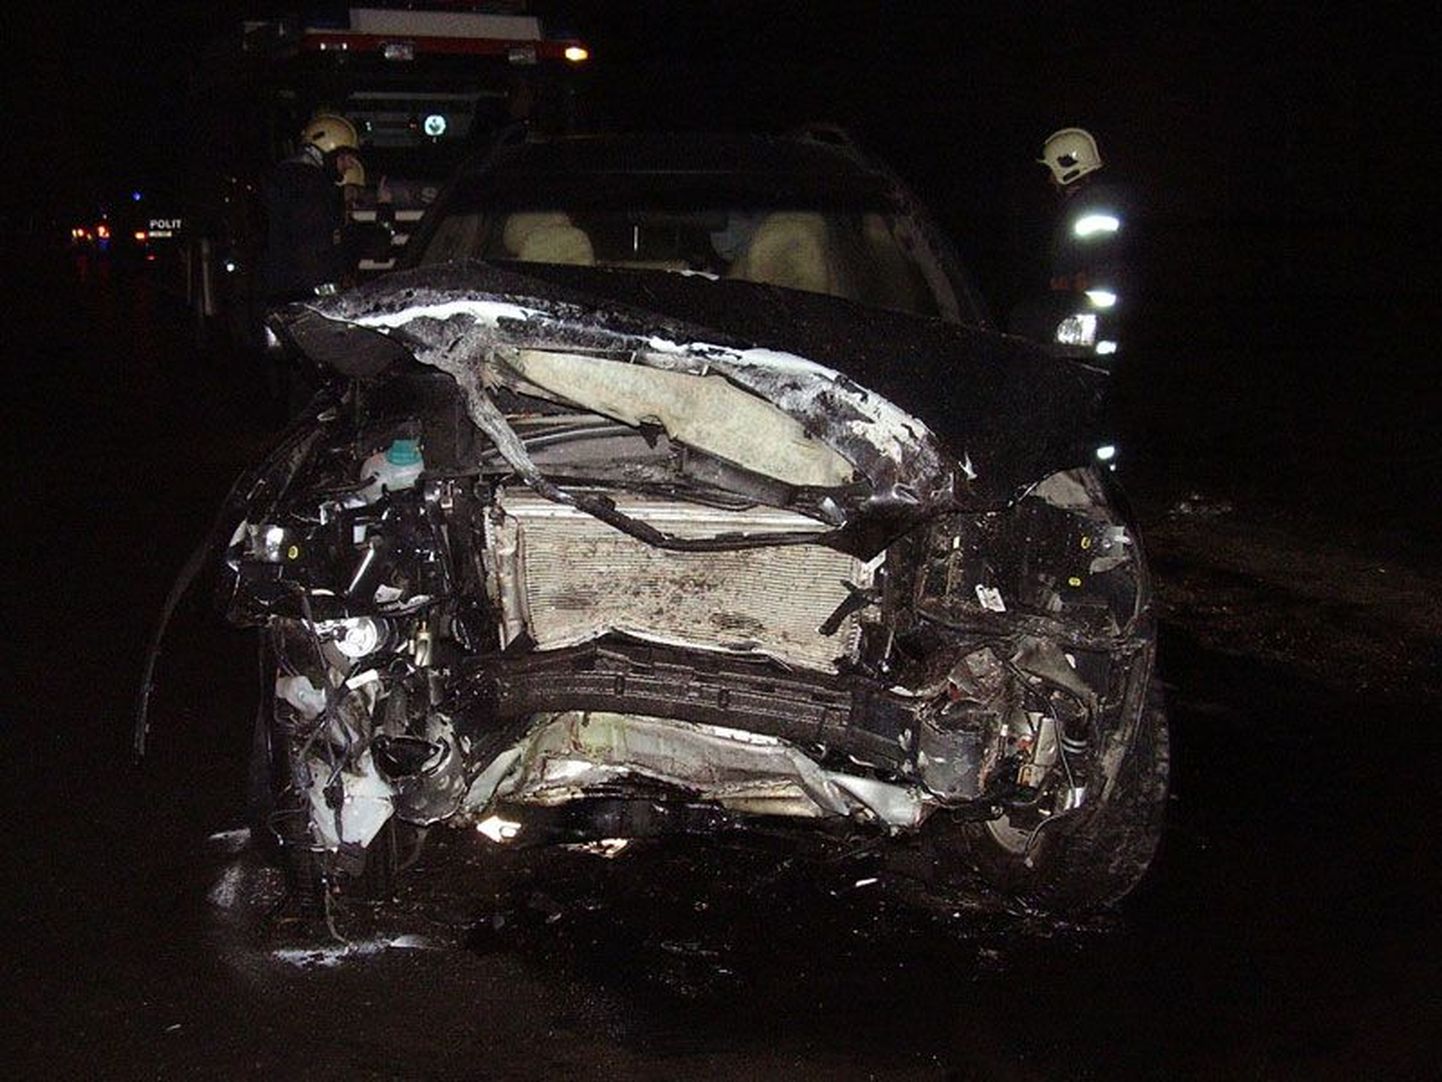 Selline nägi Joosep Laiksoo isale kuuluv auto välja pärast kolme hukkunuga päädinud avariid, mis juhtus mullu            8. detsembril Tallinna-Tartu maanteel Mäo lähedal.